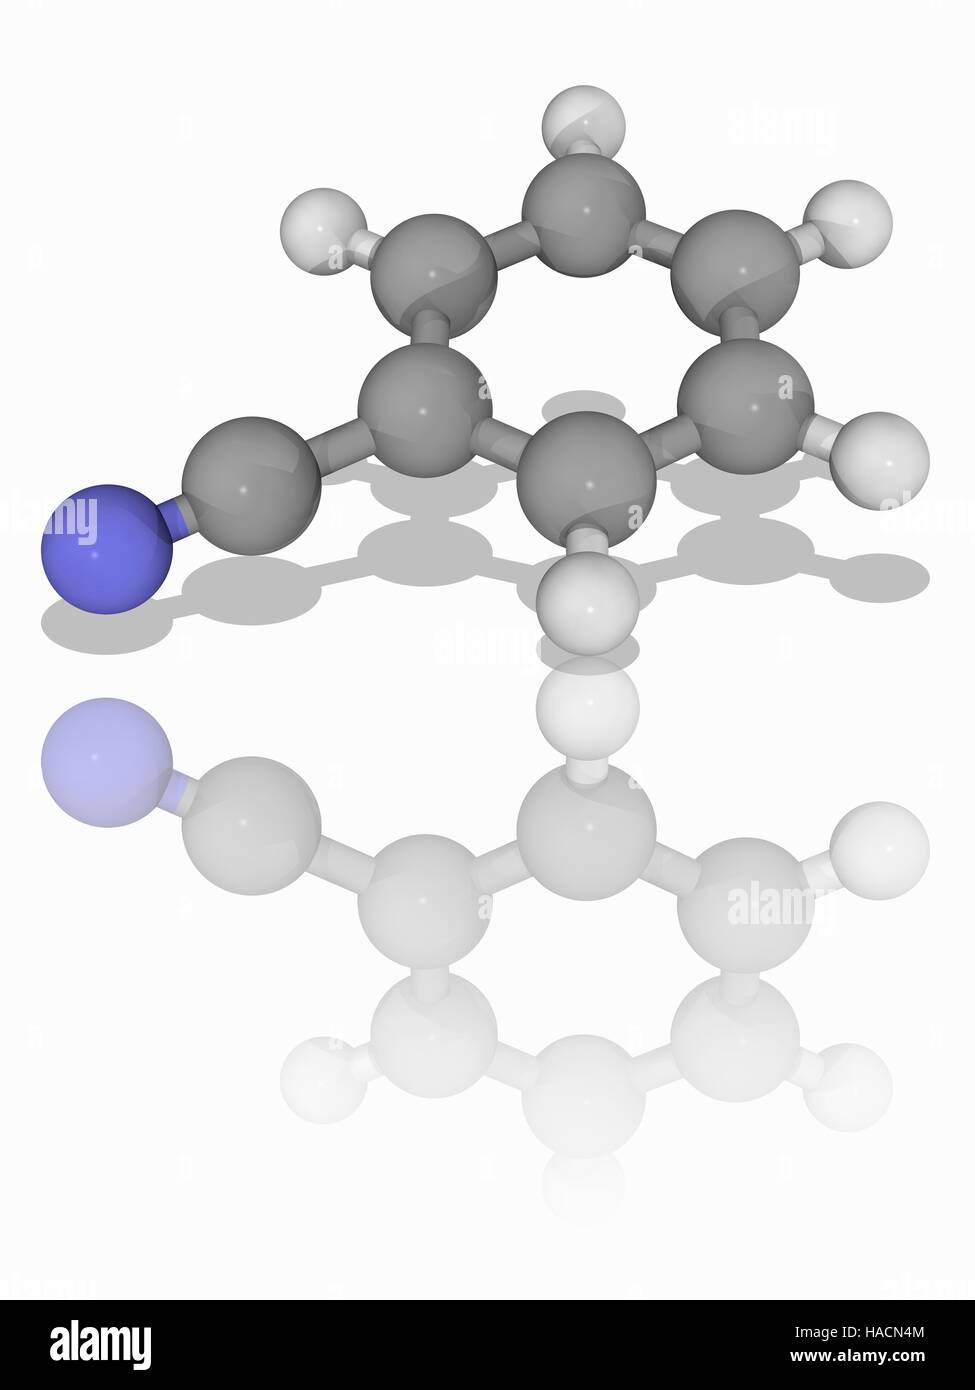 Benzonitril. Molekulares Modell des aromatische organische Verbindung Benzonitril (C7. H5. (N). es ist eine wichtige Vorstufe für die Synthese von anderen organischen Substanzen. Es hat einen süßen Mandel Geruch. Atome als Kugeln dargestellt werden und sind farblich gekennzeichnet: Kohlenstoff (grau), Wasserstoff (weiß) und Stickstoff (blau). Abbildung. Stockfoto